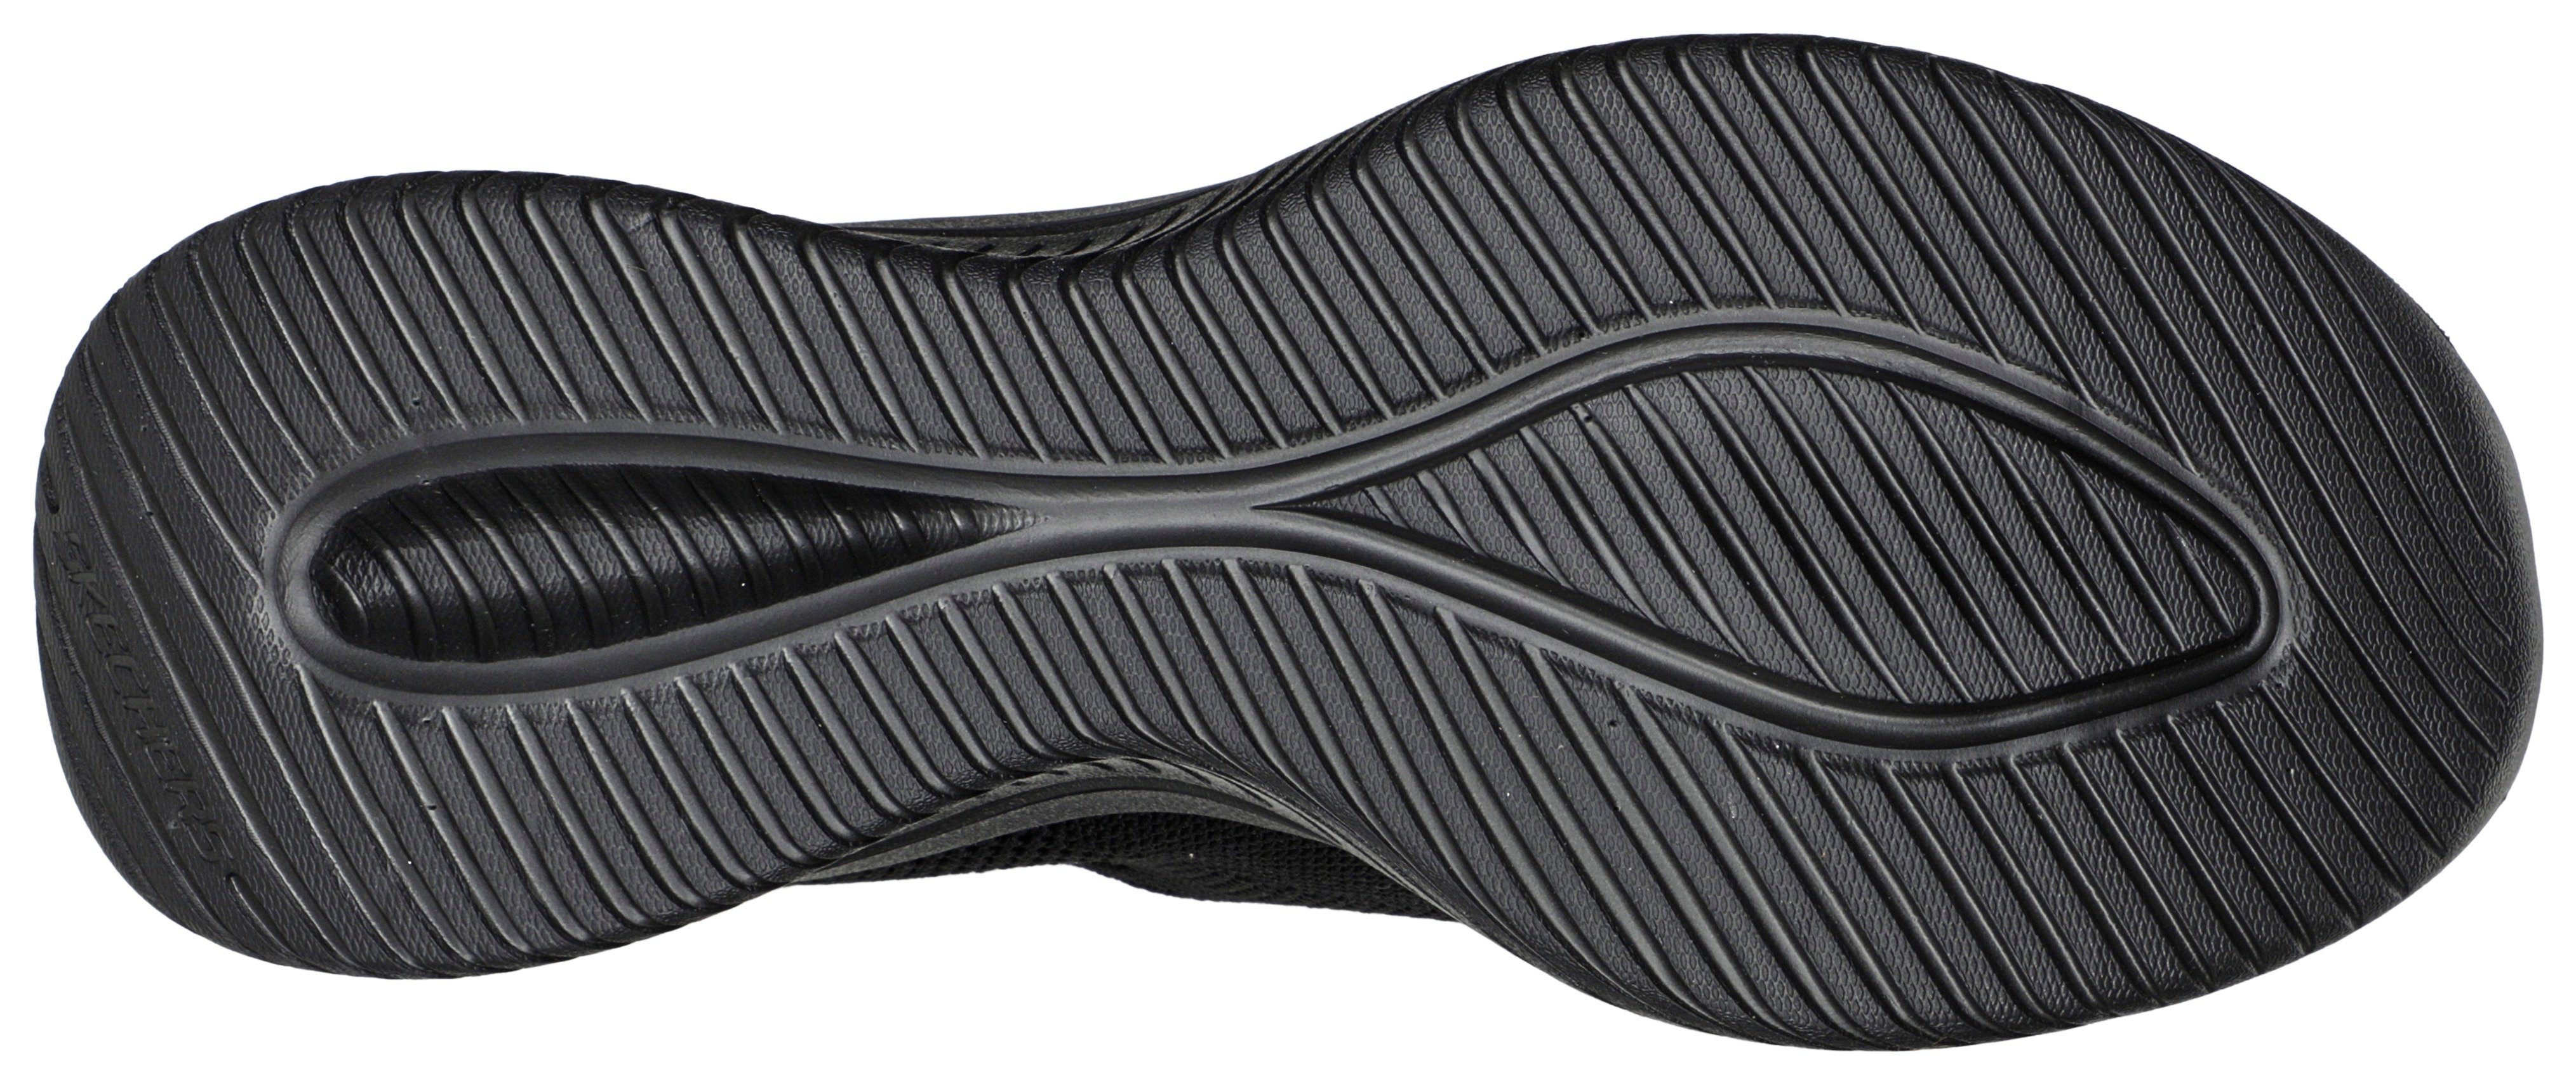 FLEX schwarz mit Ins-Funktion für Slip Sneaker 3.0 Slip-On leichten Einschlupf Skechers ULTRA